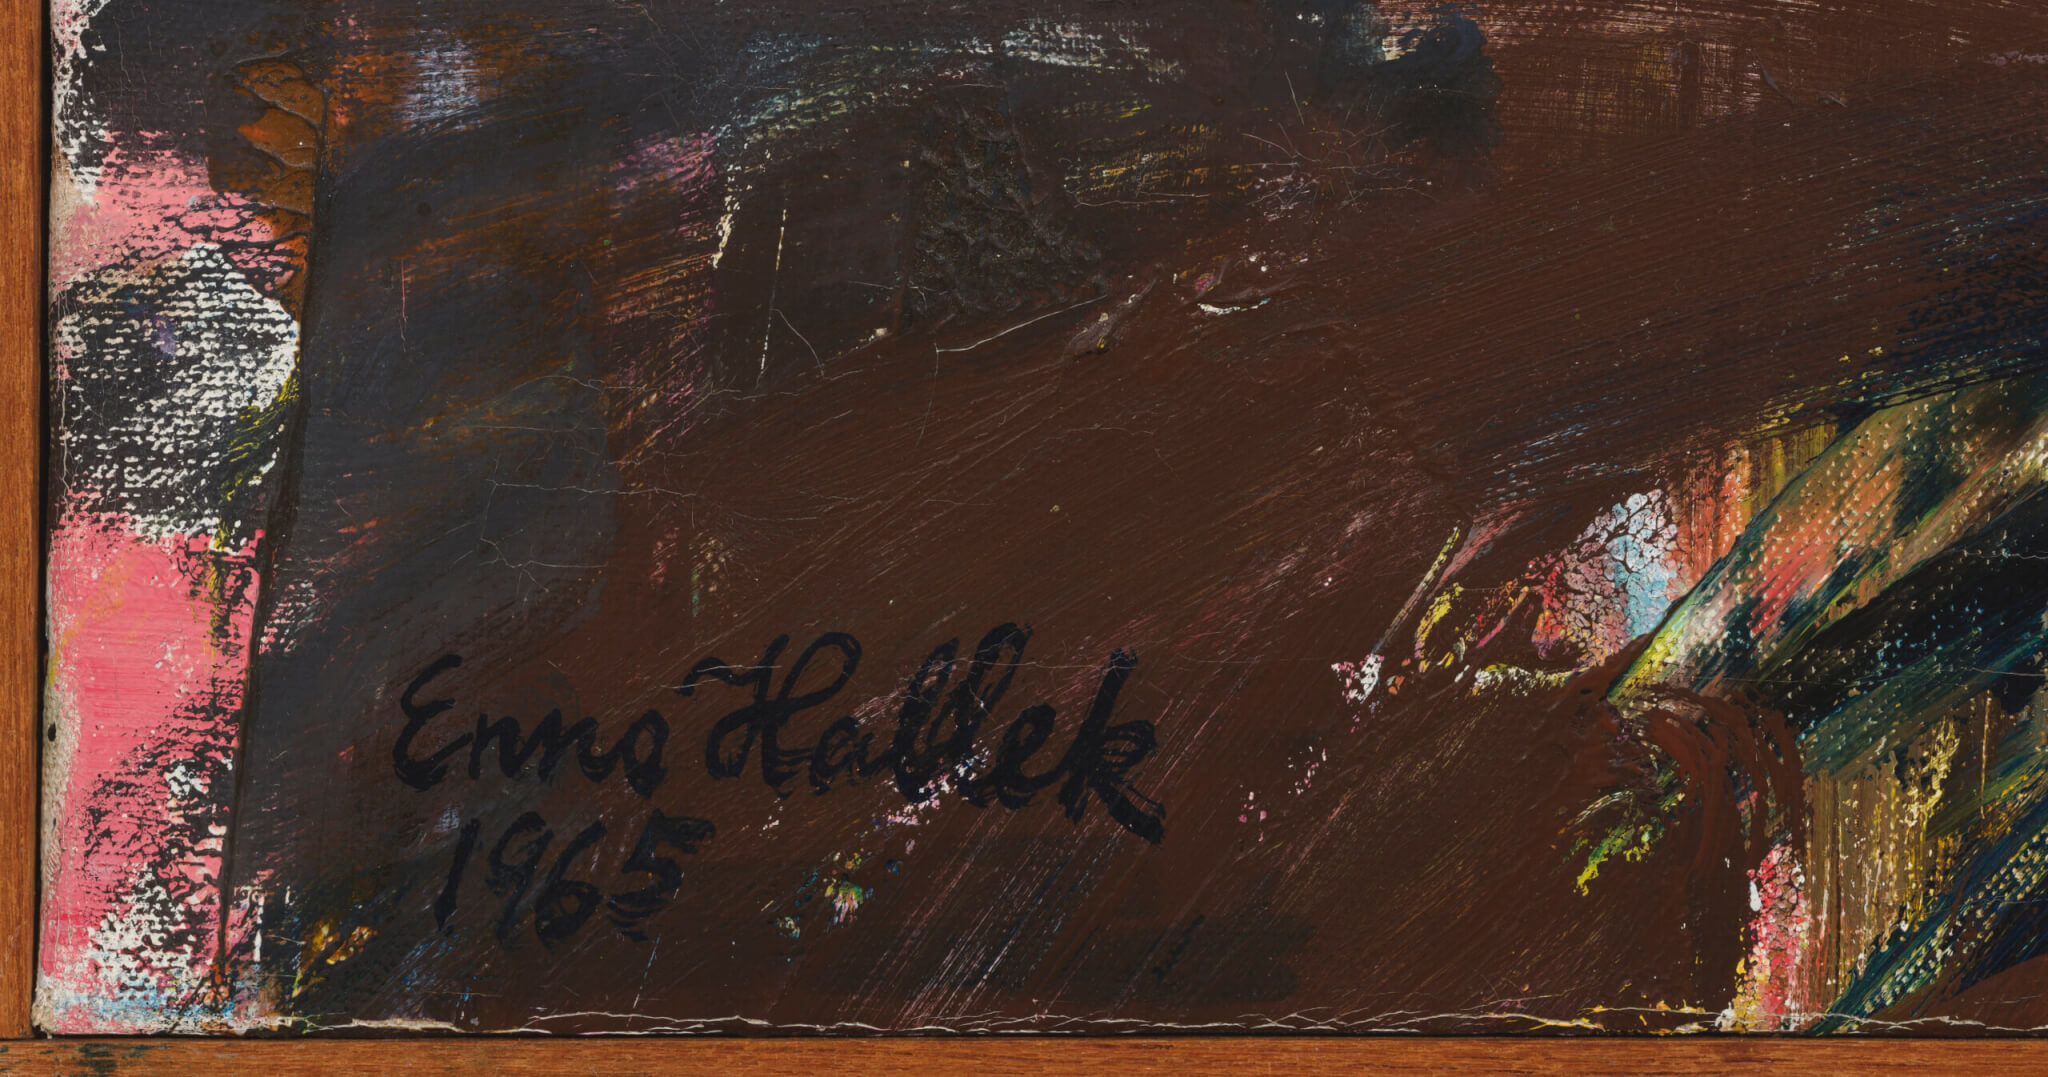 Enno Hallek “Mälestus”, 1965. 87,4 x 63,4 cm.